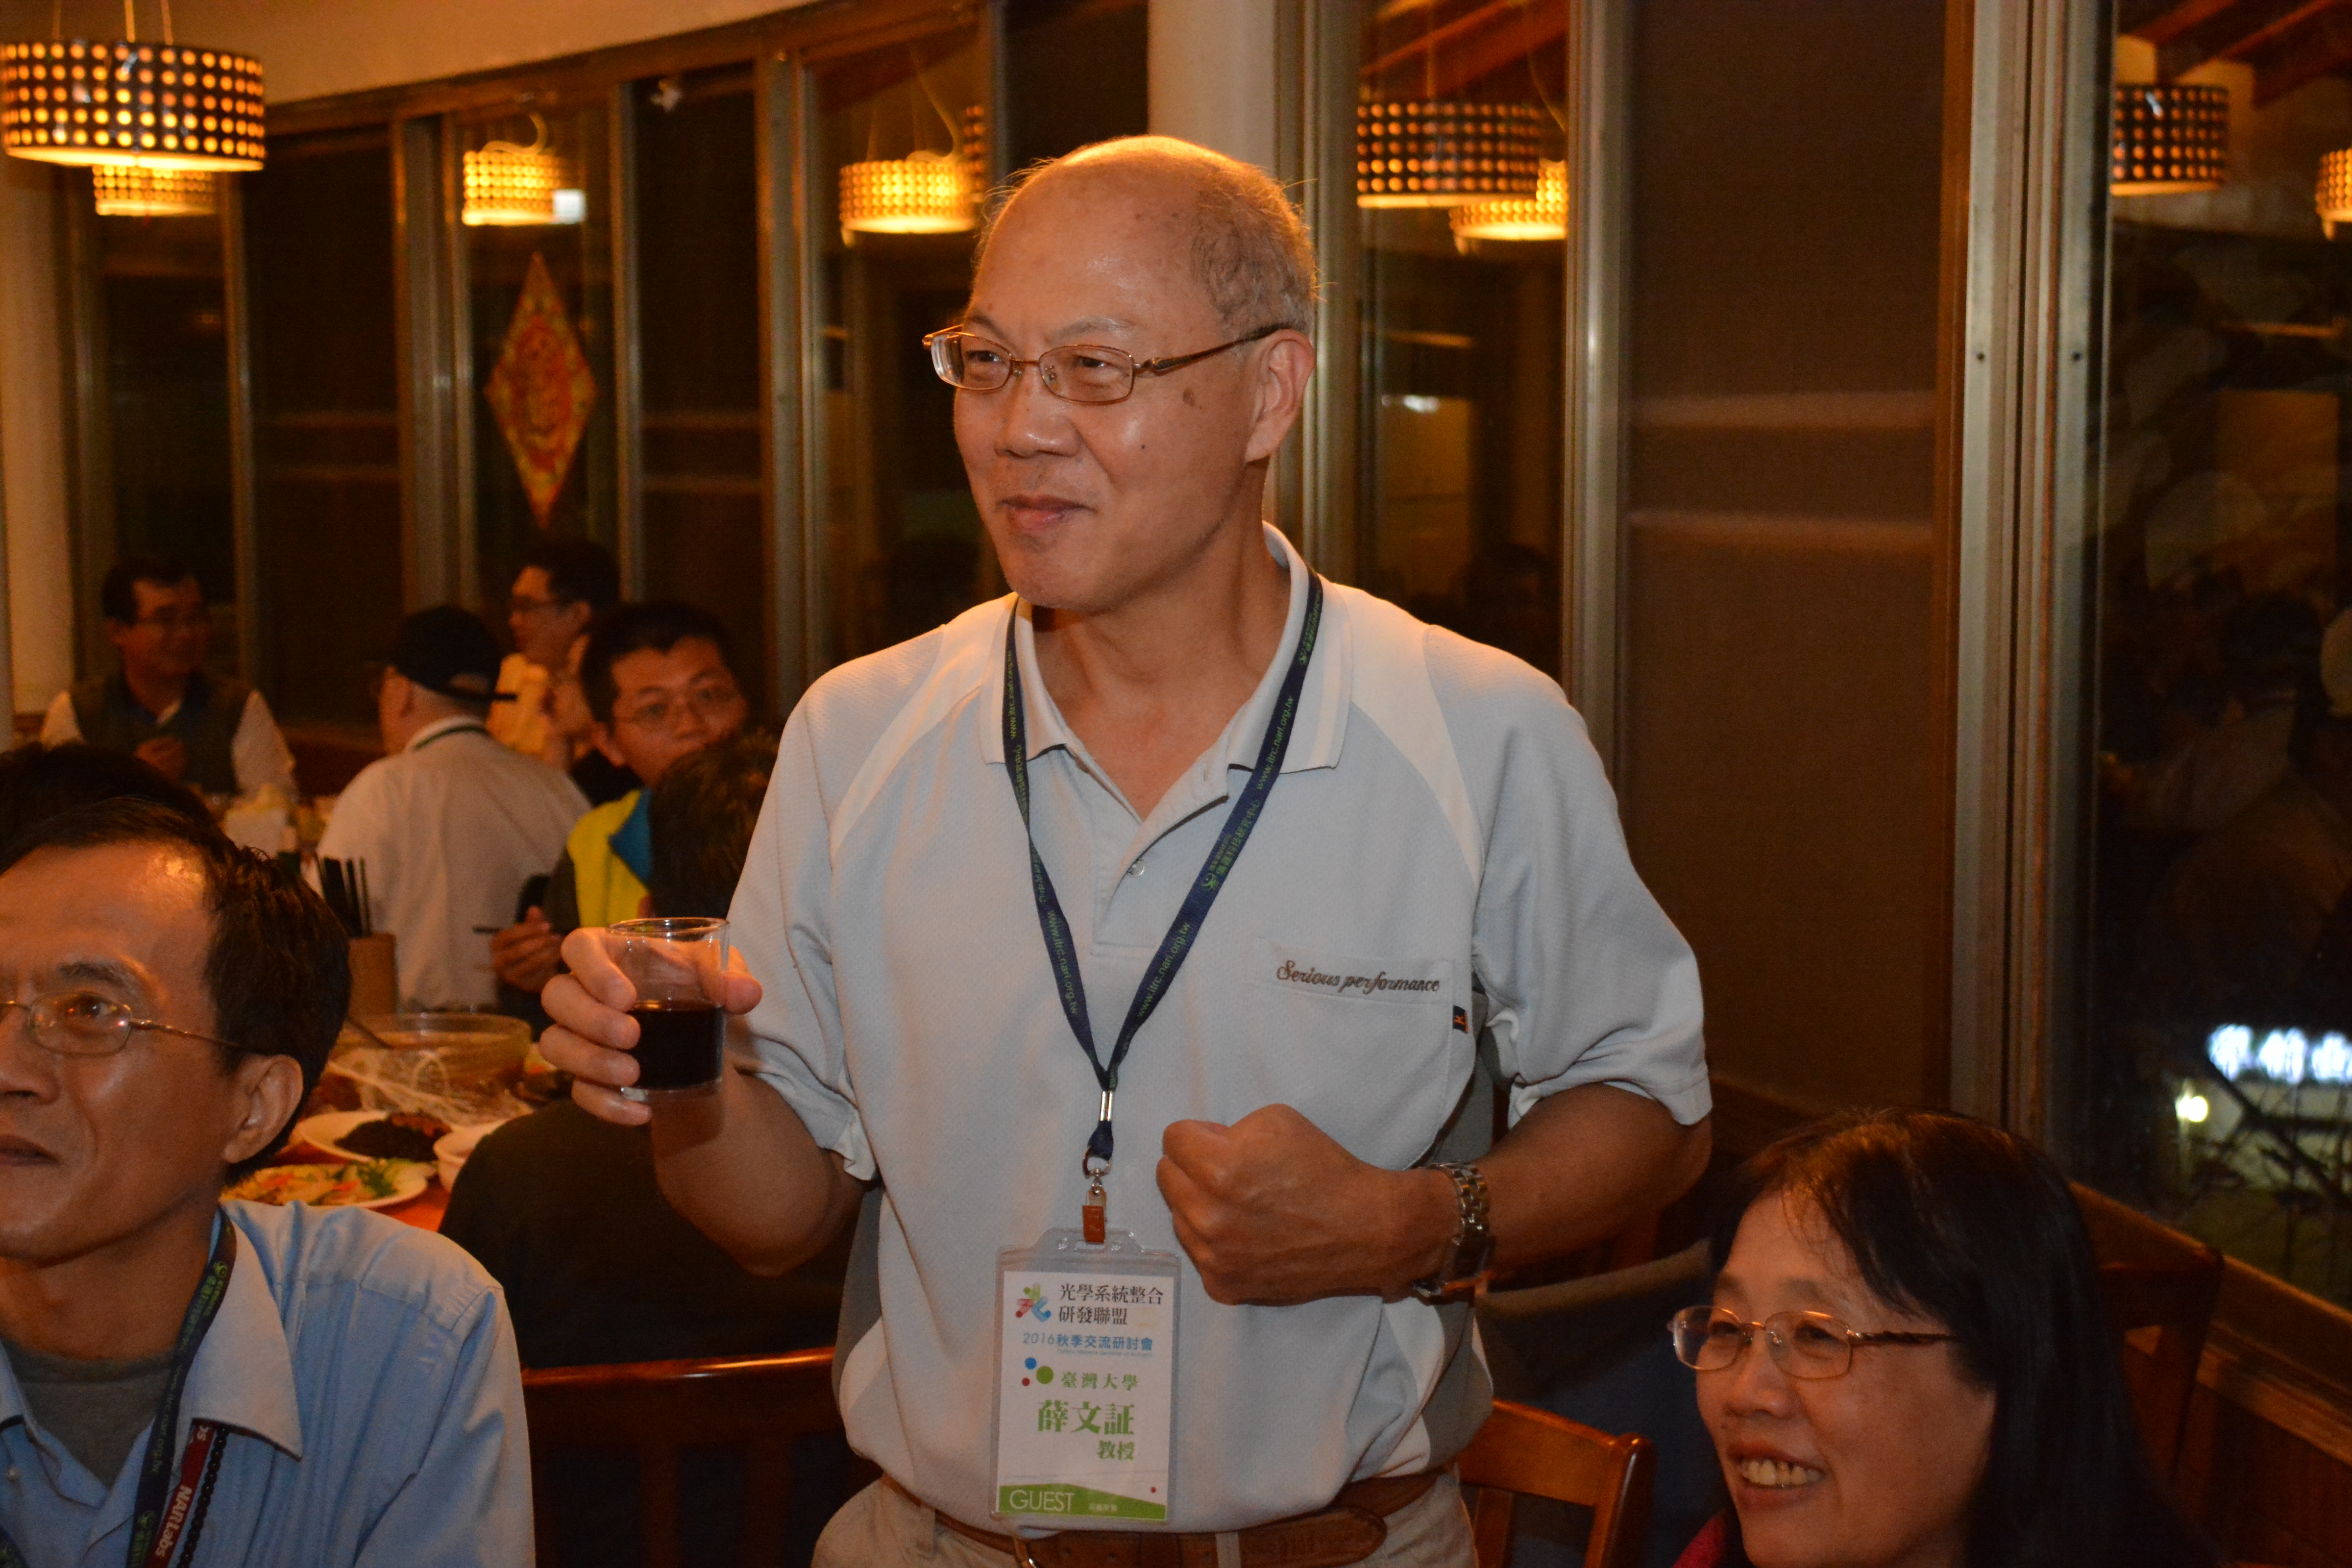 台灣大學工科系薛文証教授參加「光學系統整合研發聯盟交流研討會」的活動照片